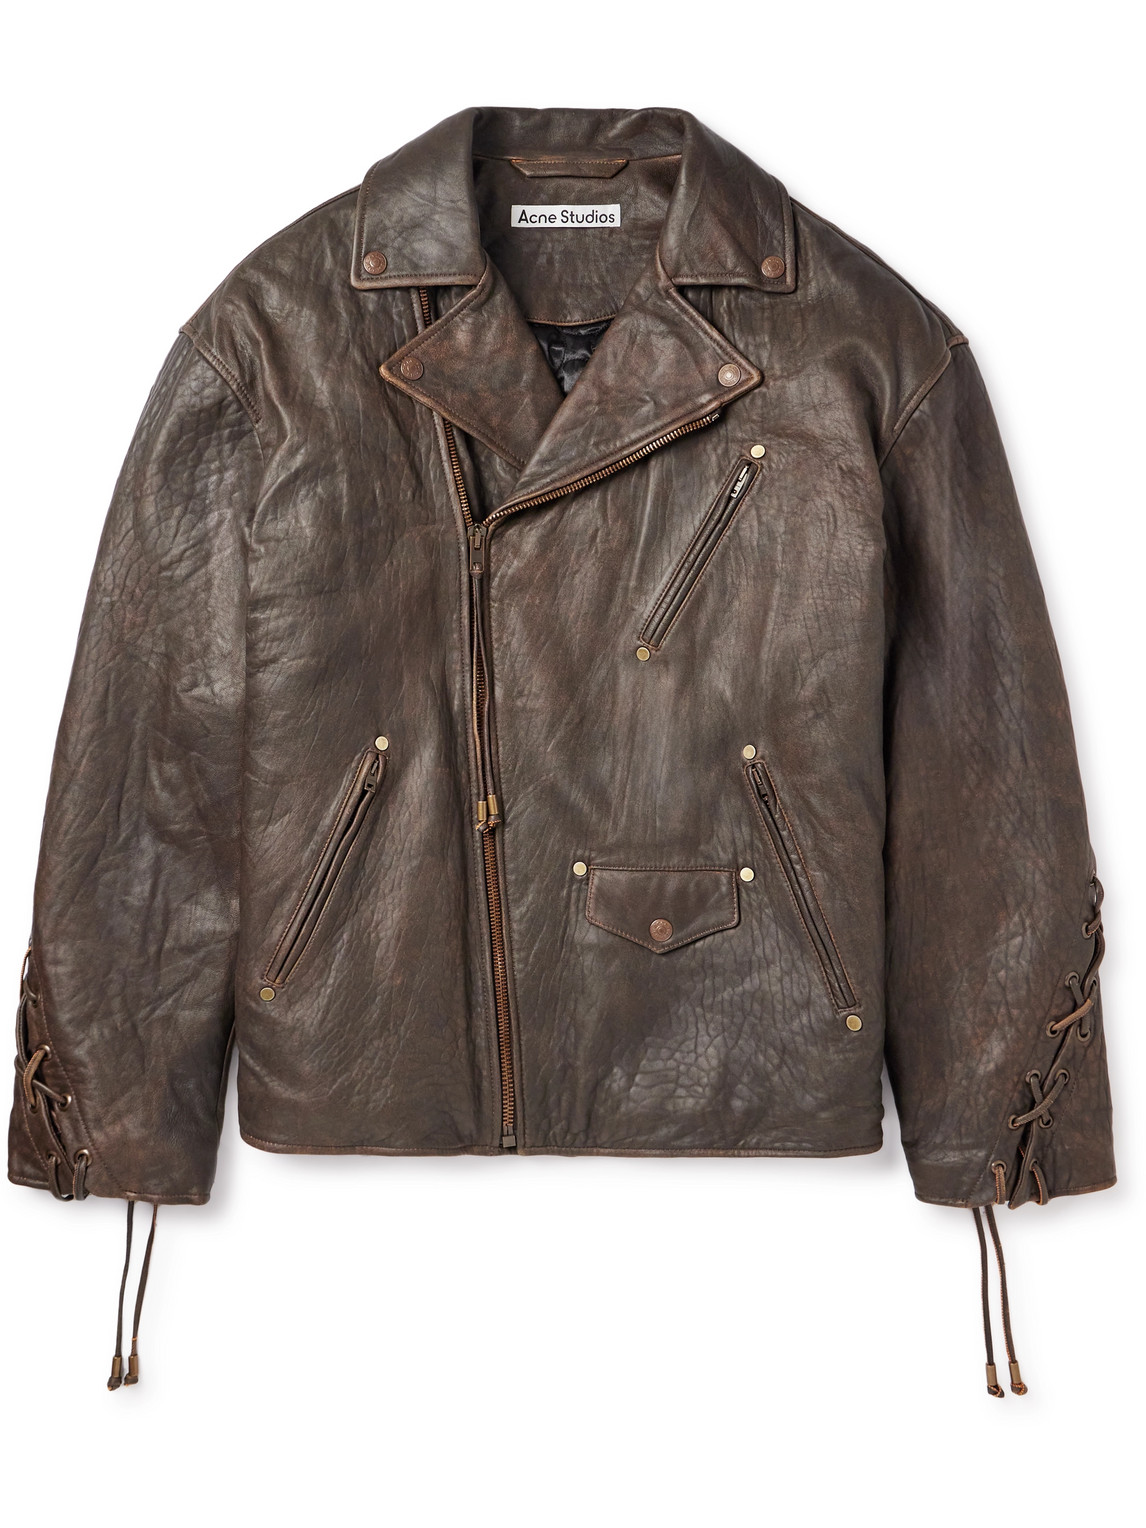 Acne Studios - Braid-Trimmed Textured-Leather Biker Jacket - Men - Brown - IT 52 von Acne Studios